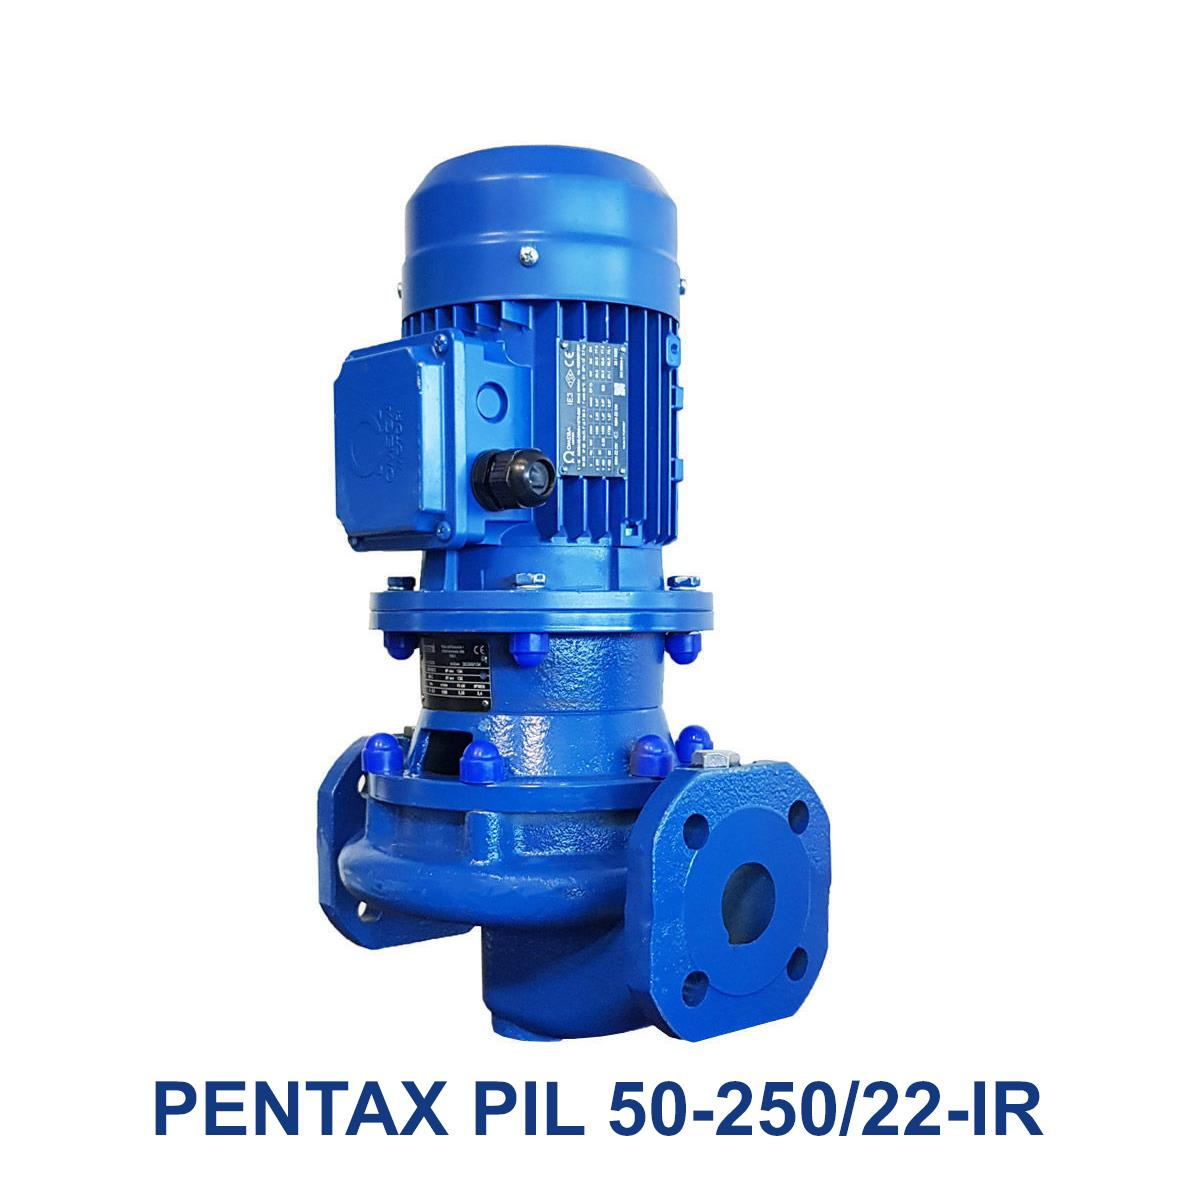 PENTAX-PIL-50-250-22-IR